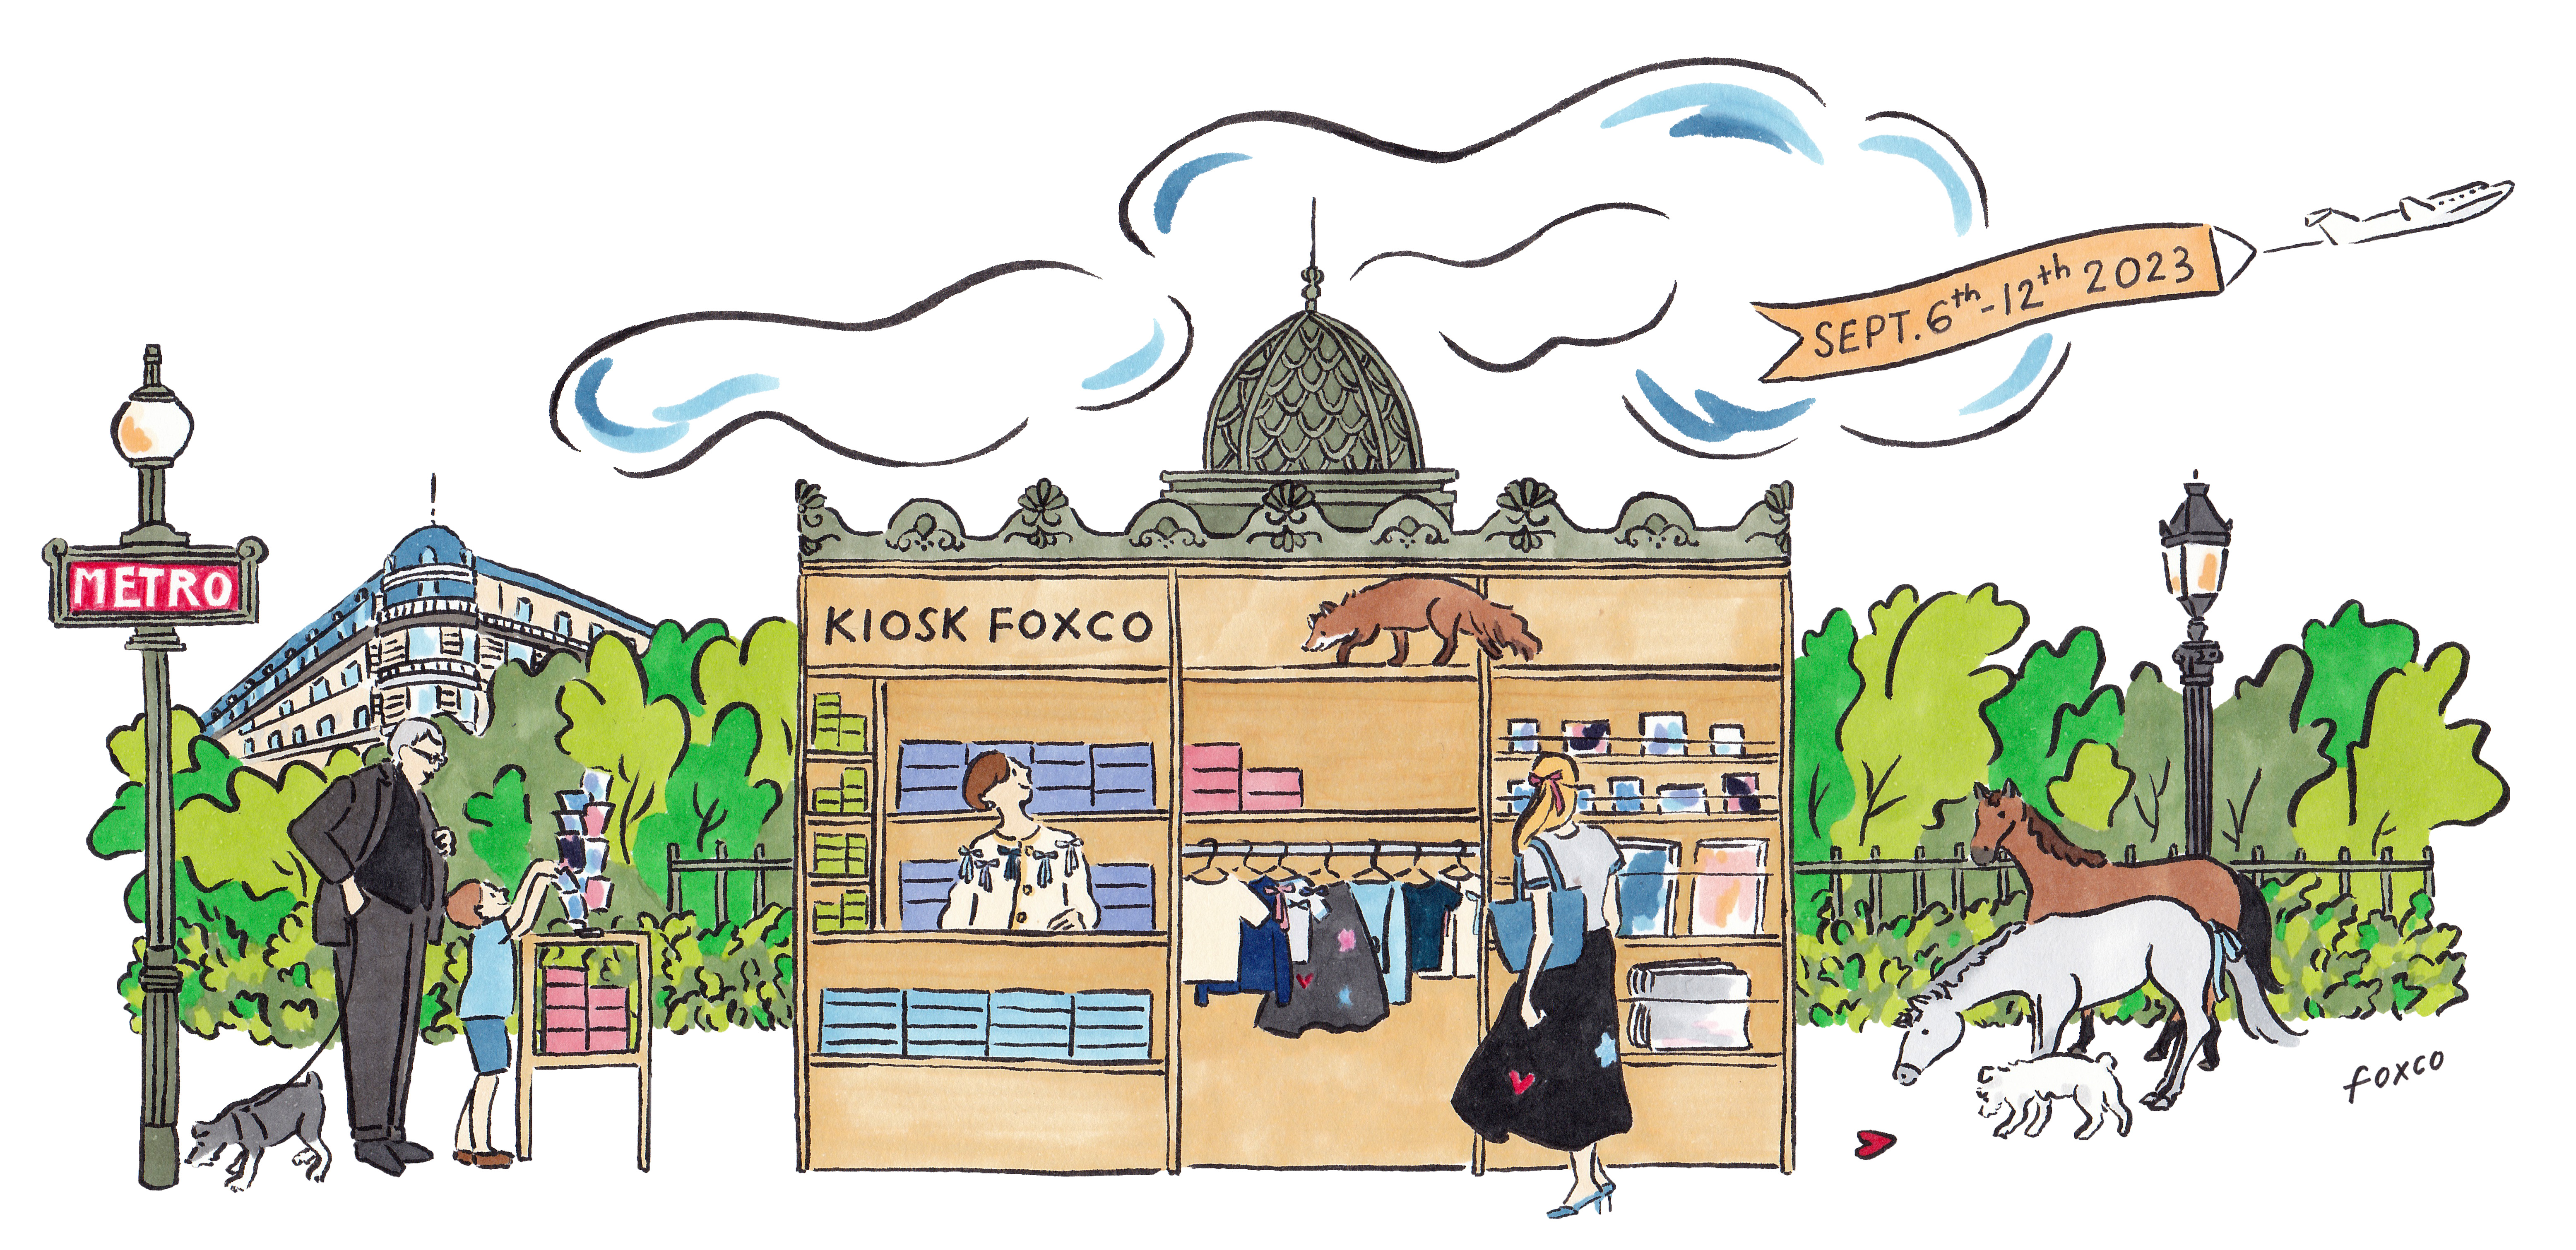 イラストレーター foxcoがPOP UP SHOP「 KIOSK FOXCO」を開催